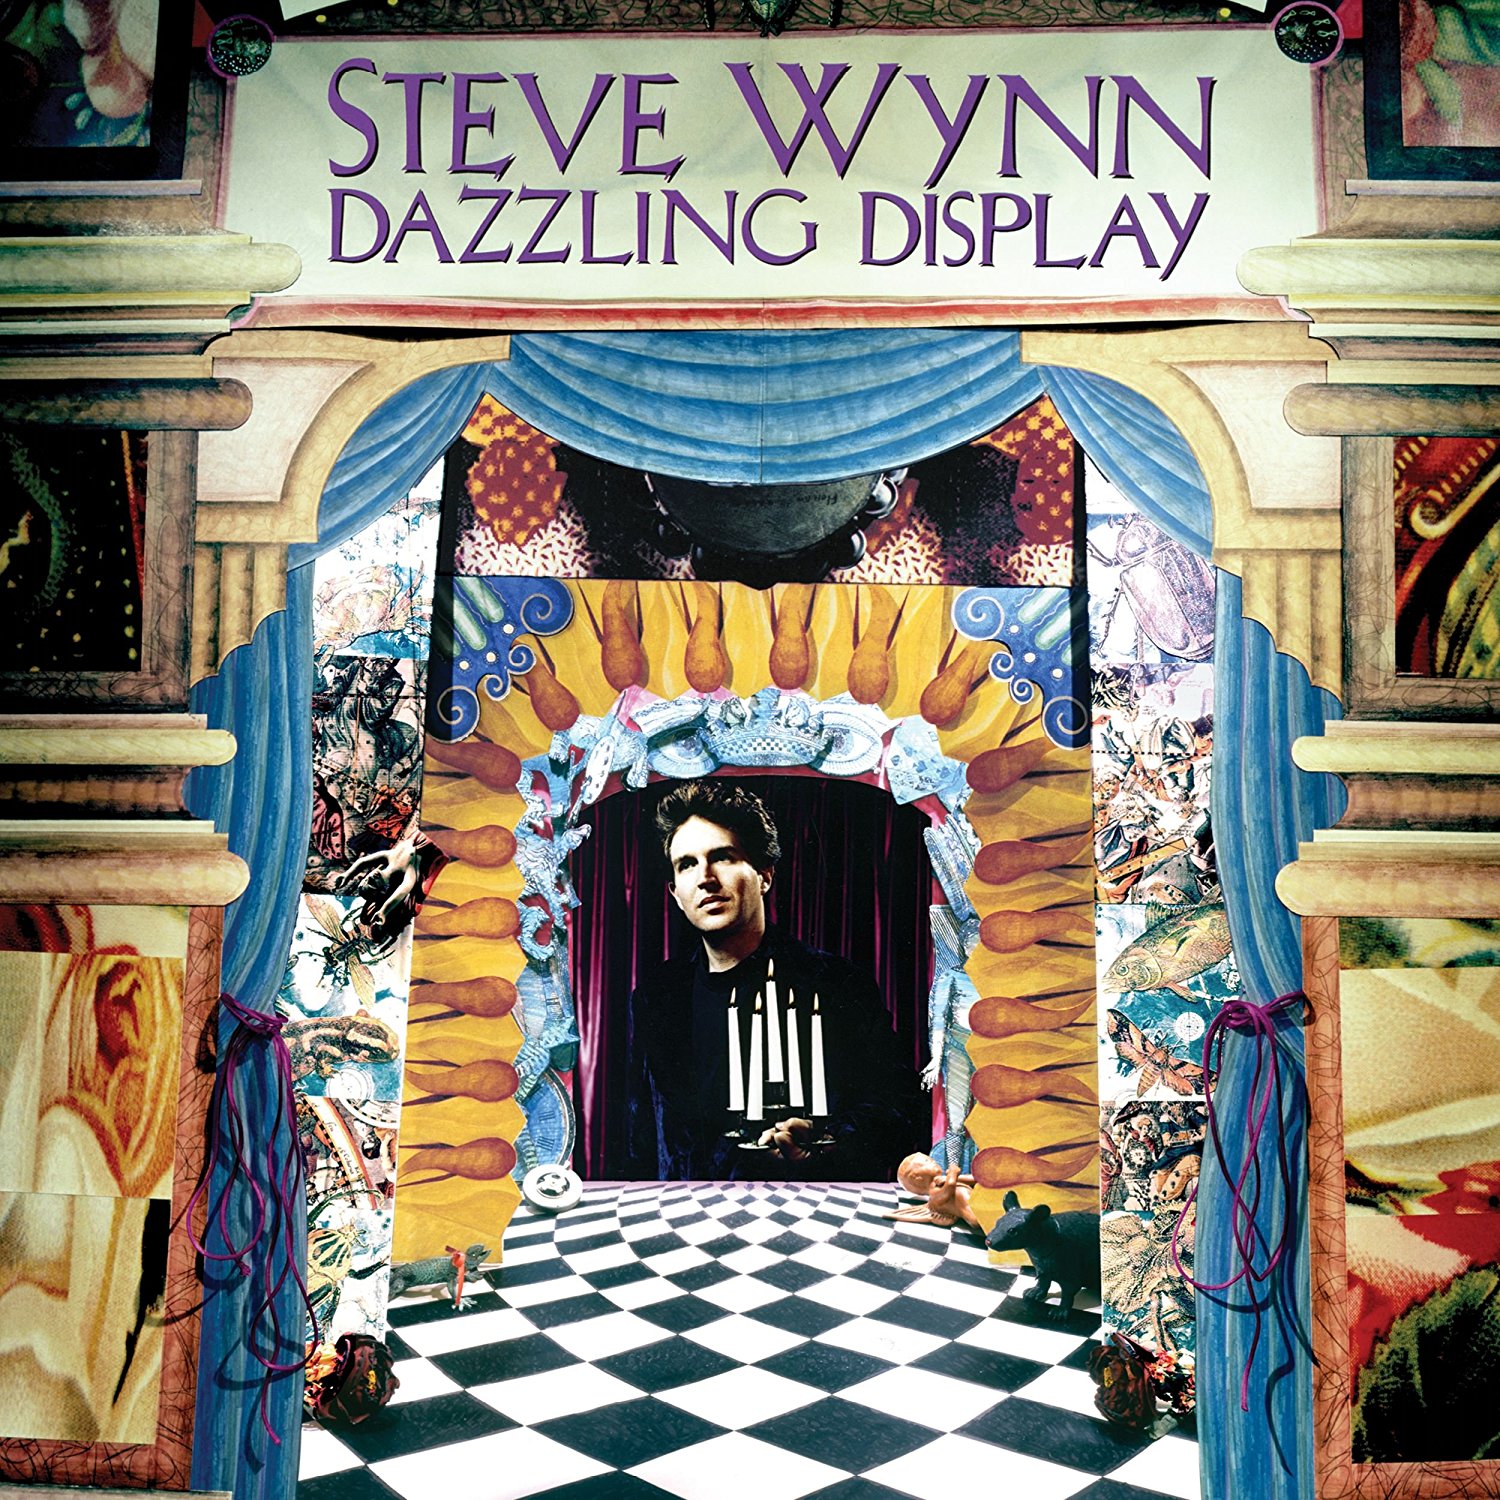 Dazzling Display by Steve Wynn